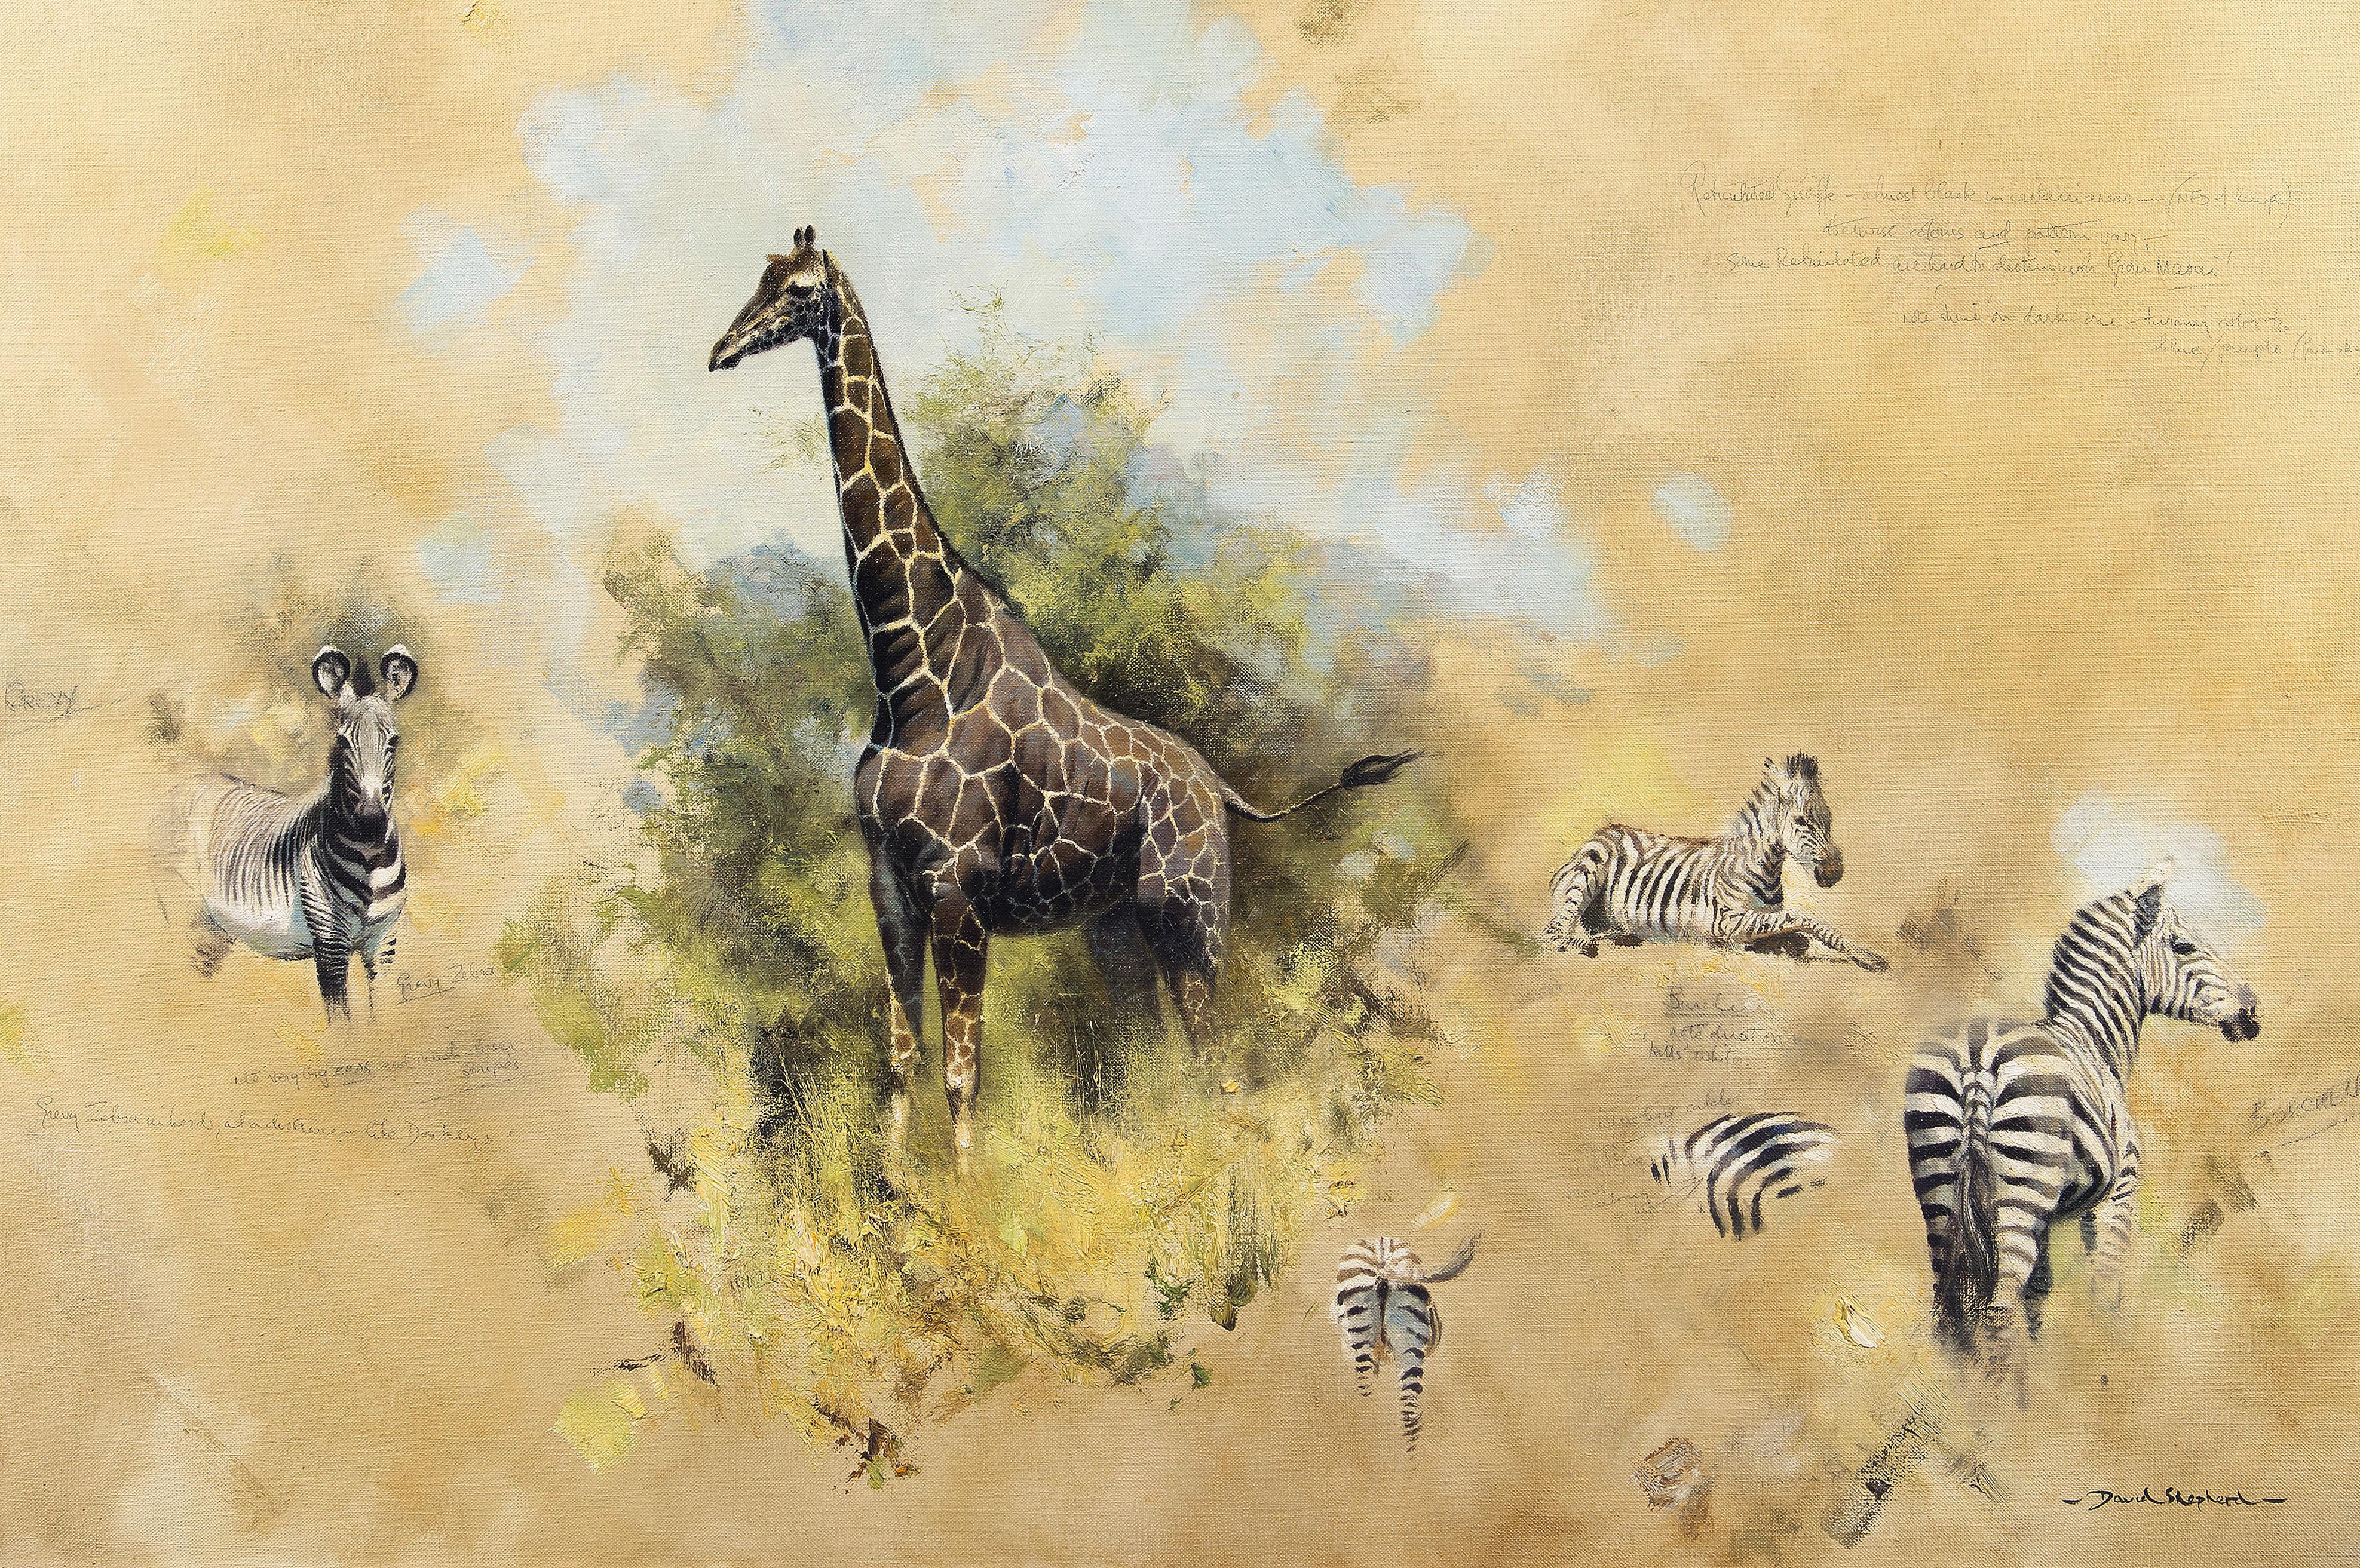 Studies of Zebra and Giraffe - Painting by David Shepherd, CBE FRSA FRGS